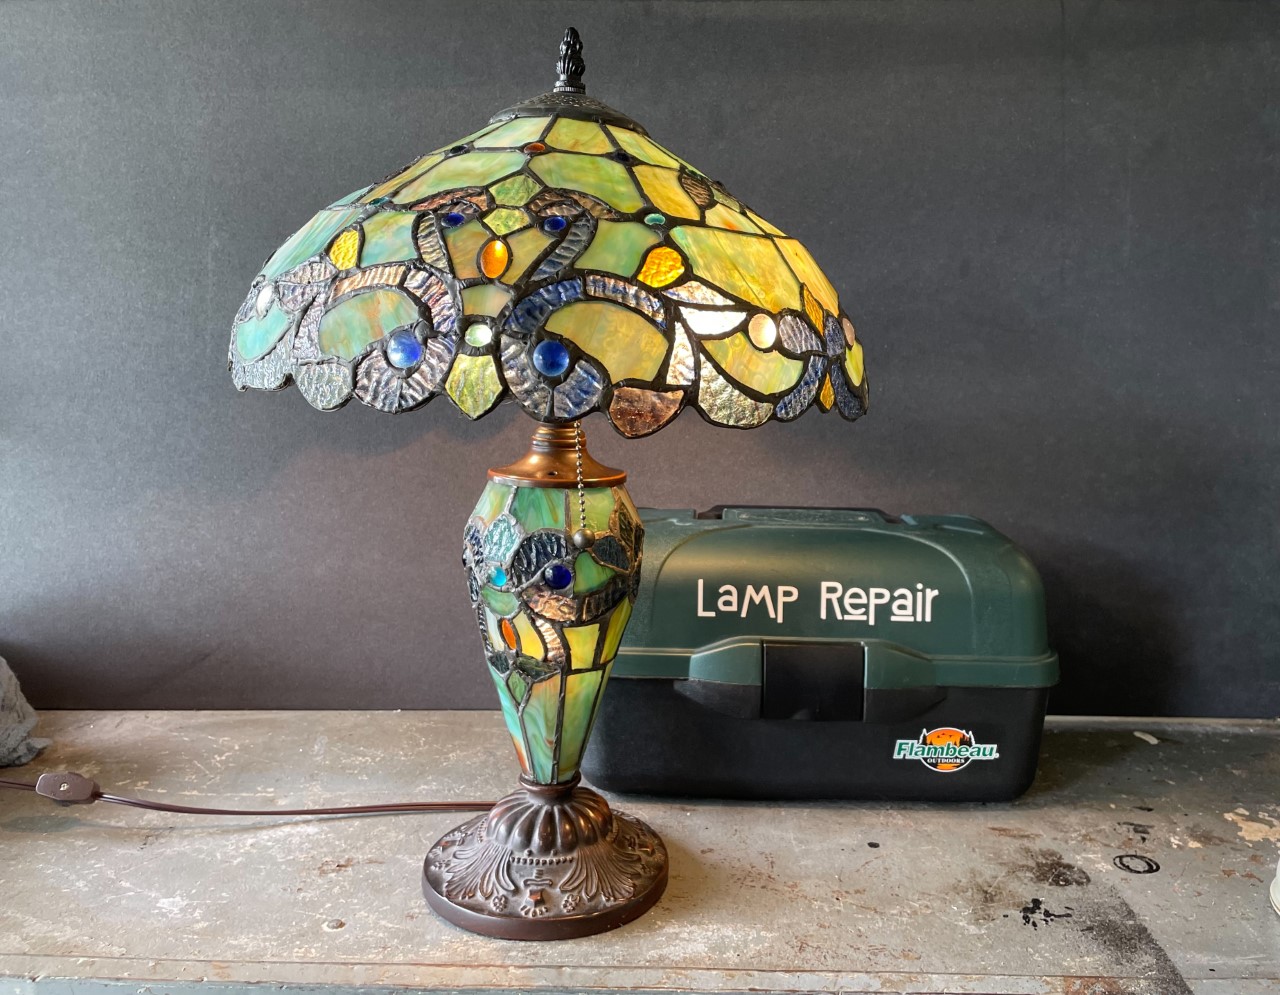 Image of lamp repair set